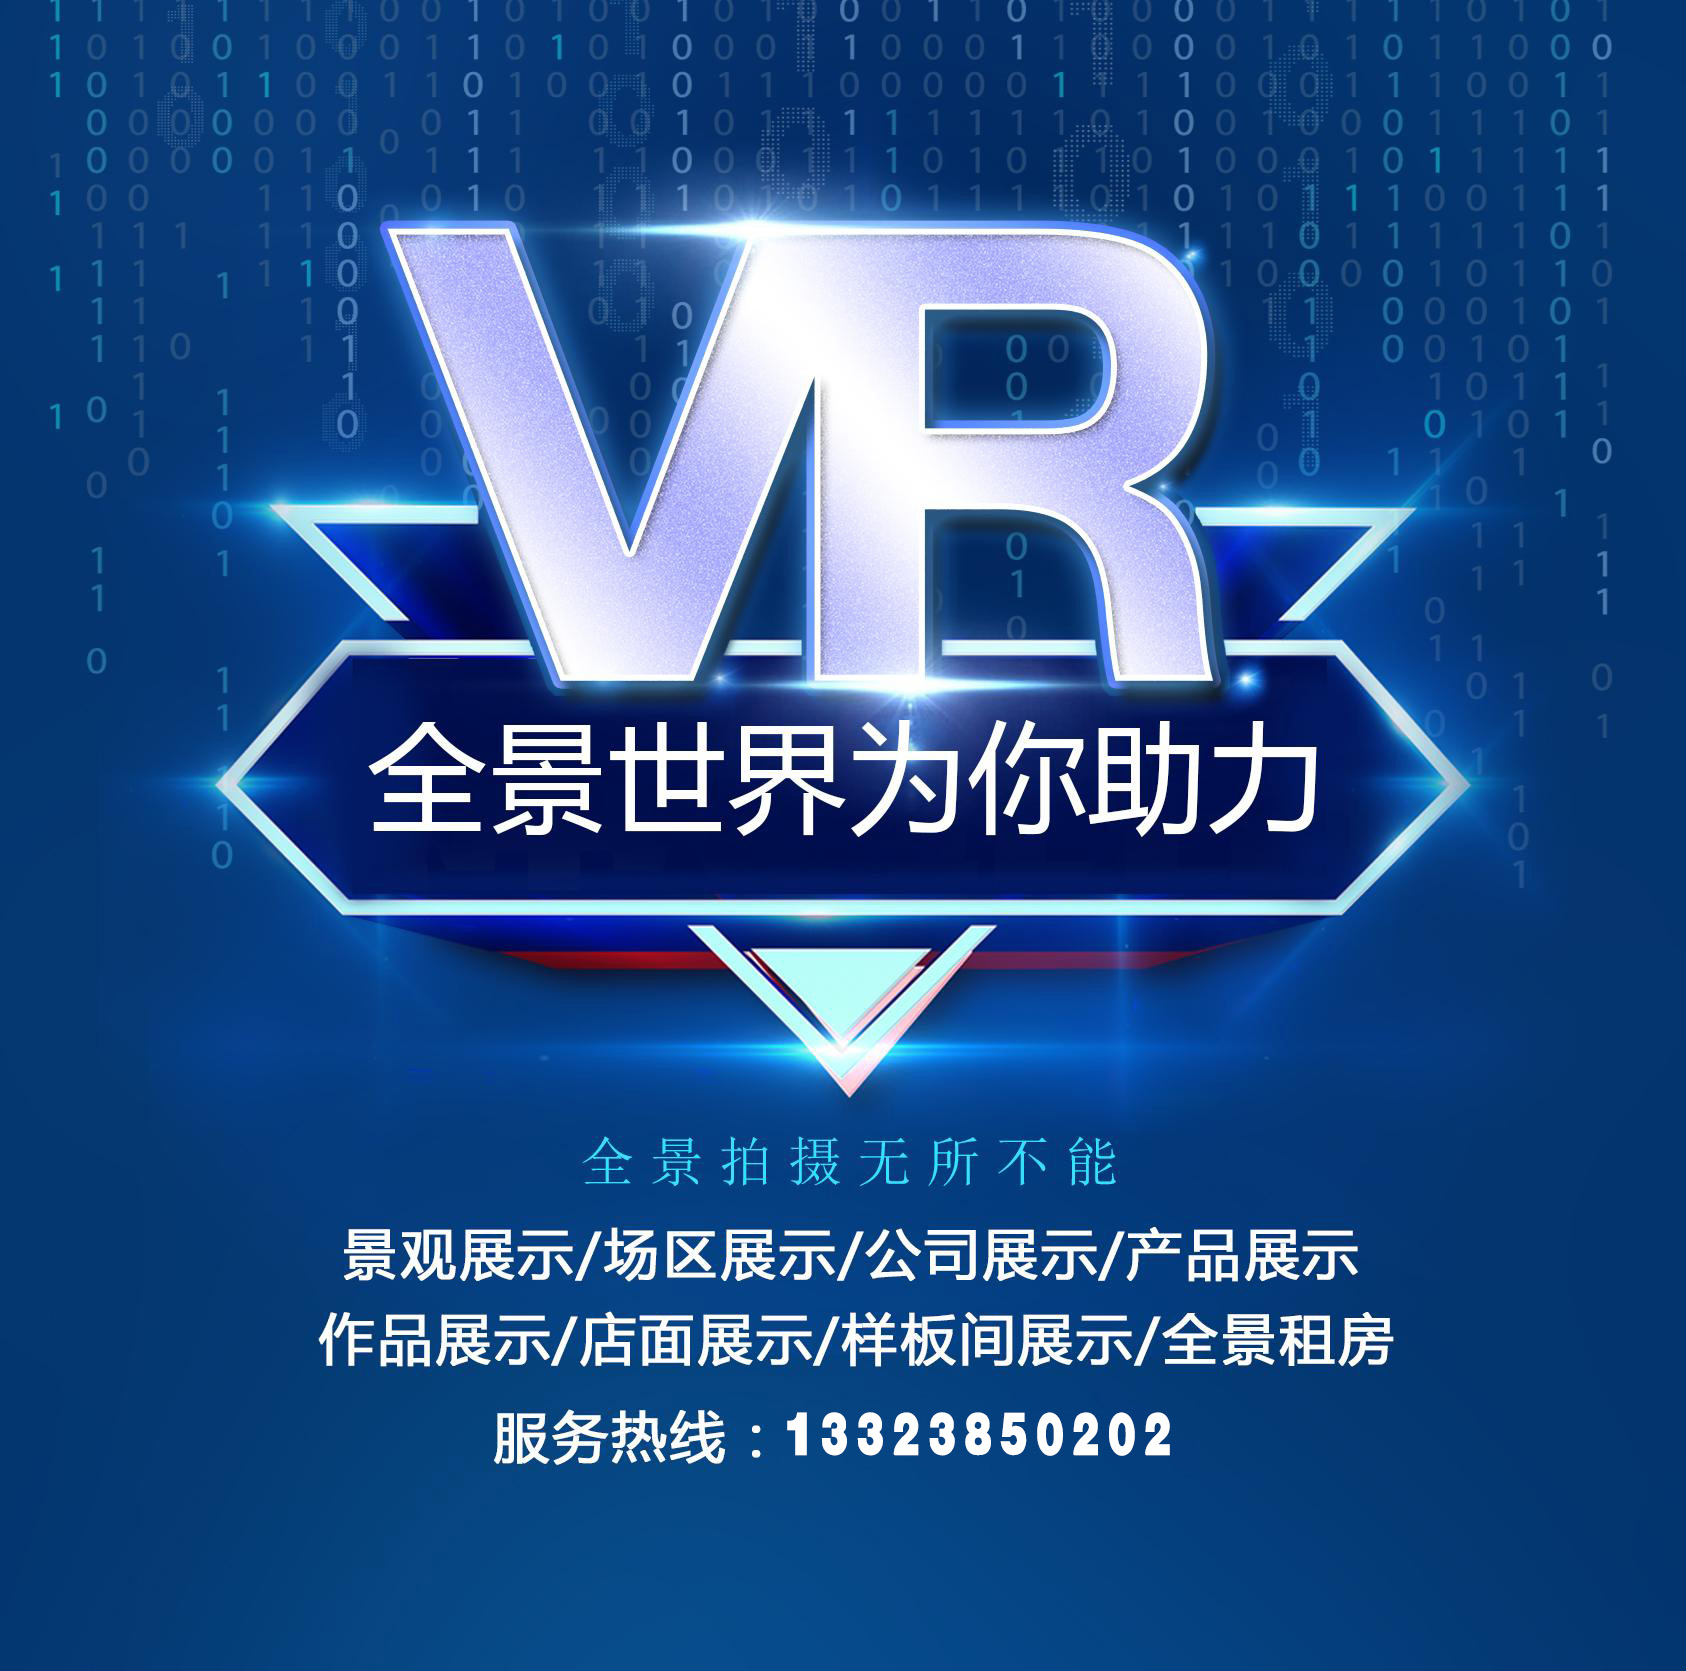 安阳VR全景拍摄制作 专业航拍VR全景服务 酒店宾馆学校VR全景拍摄制作